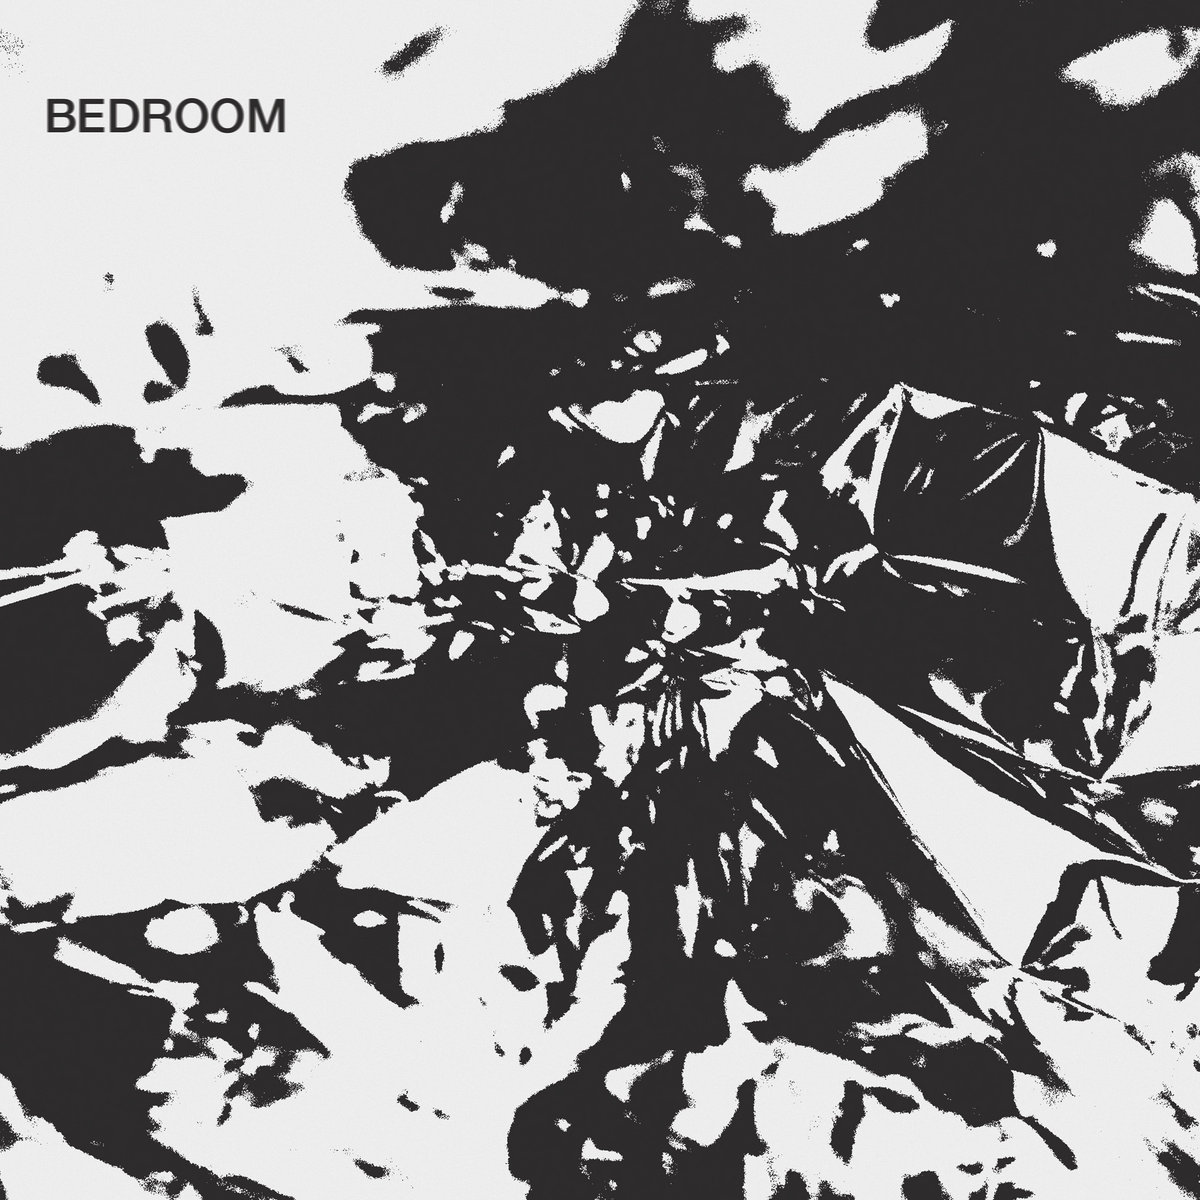 bdrmm – Bedroom Album Review